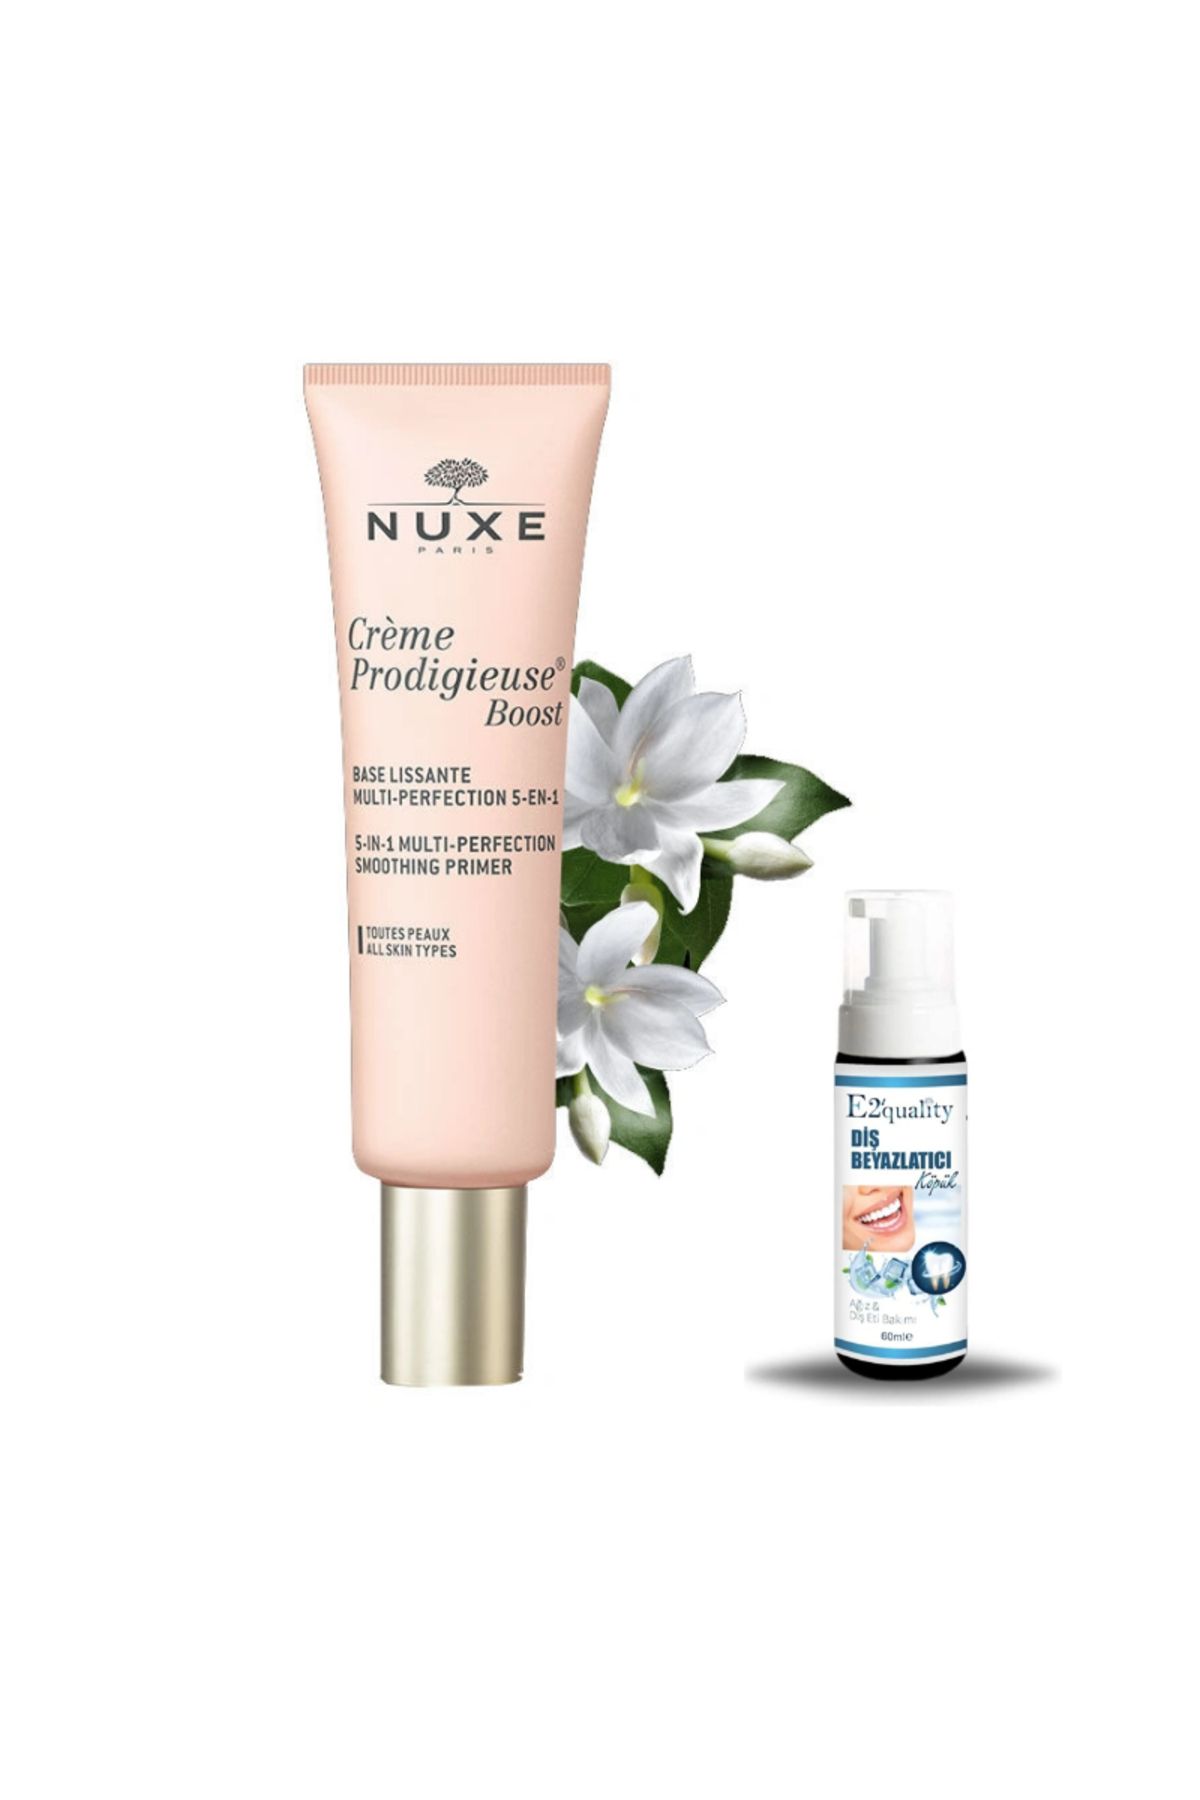 Nuxe Creme Prodigieuse Boost 5-in-1 Multi-Perfection Smoothing Primer 30 ml +Diş Beyazlatıcı Köpük Hediye